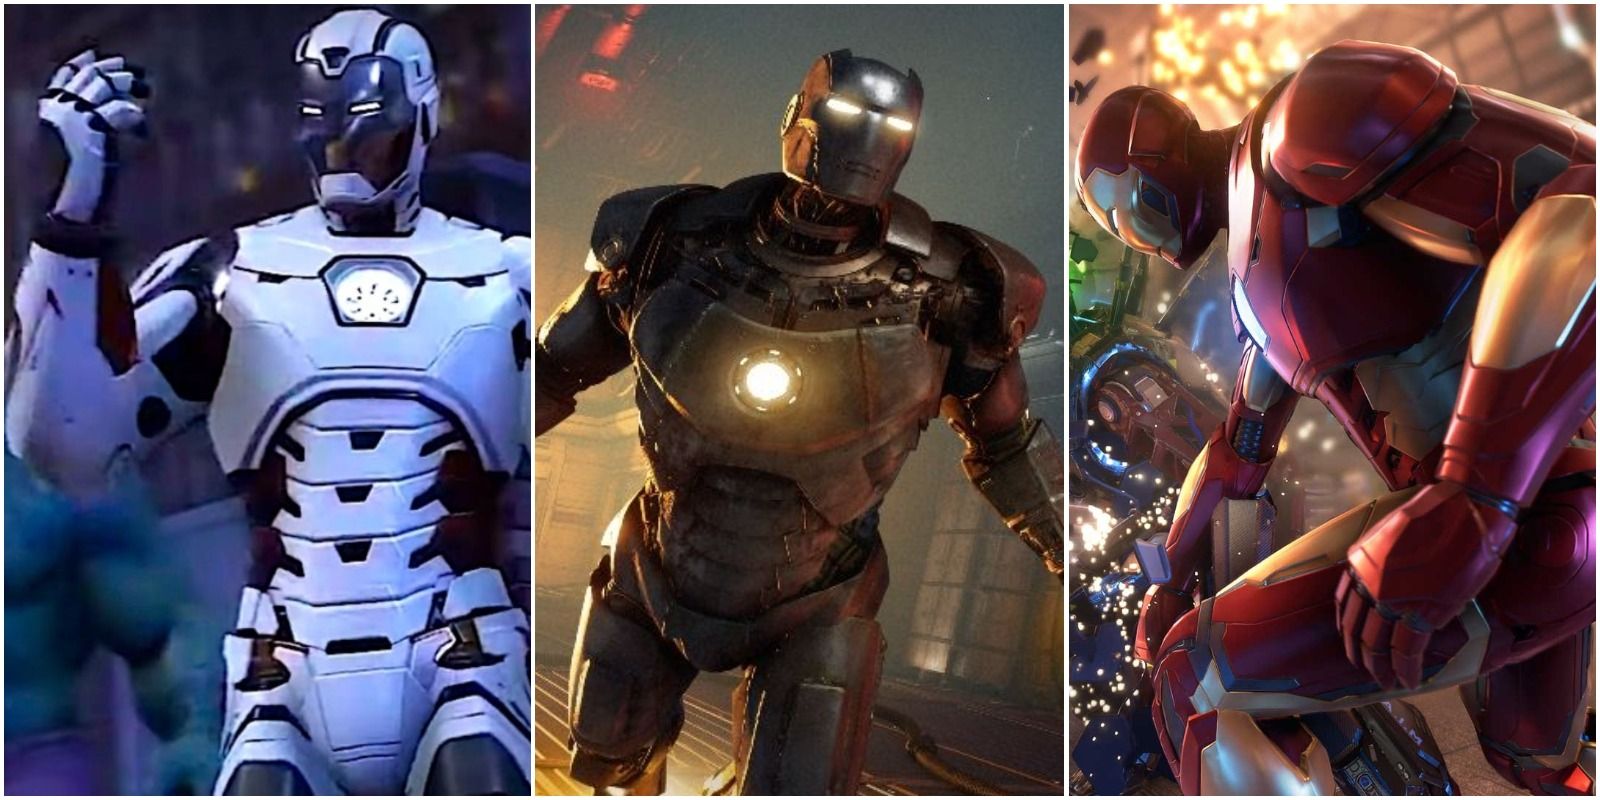 Iron Man in Marvel's Avengers